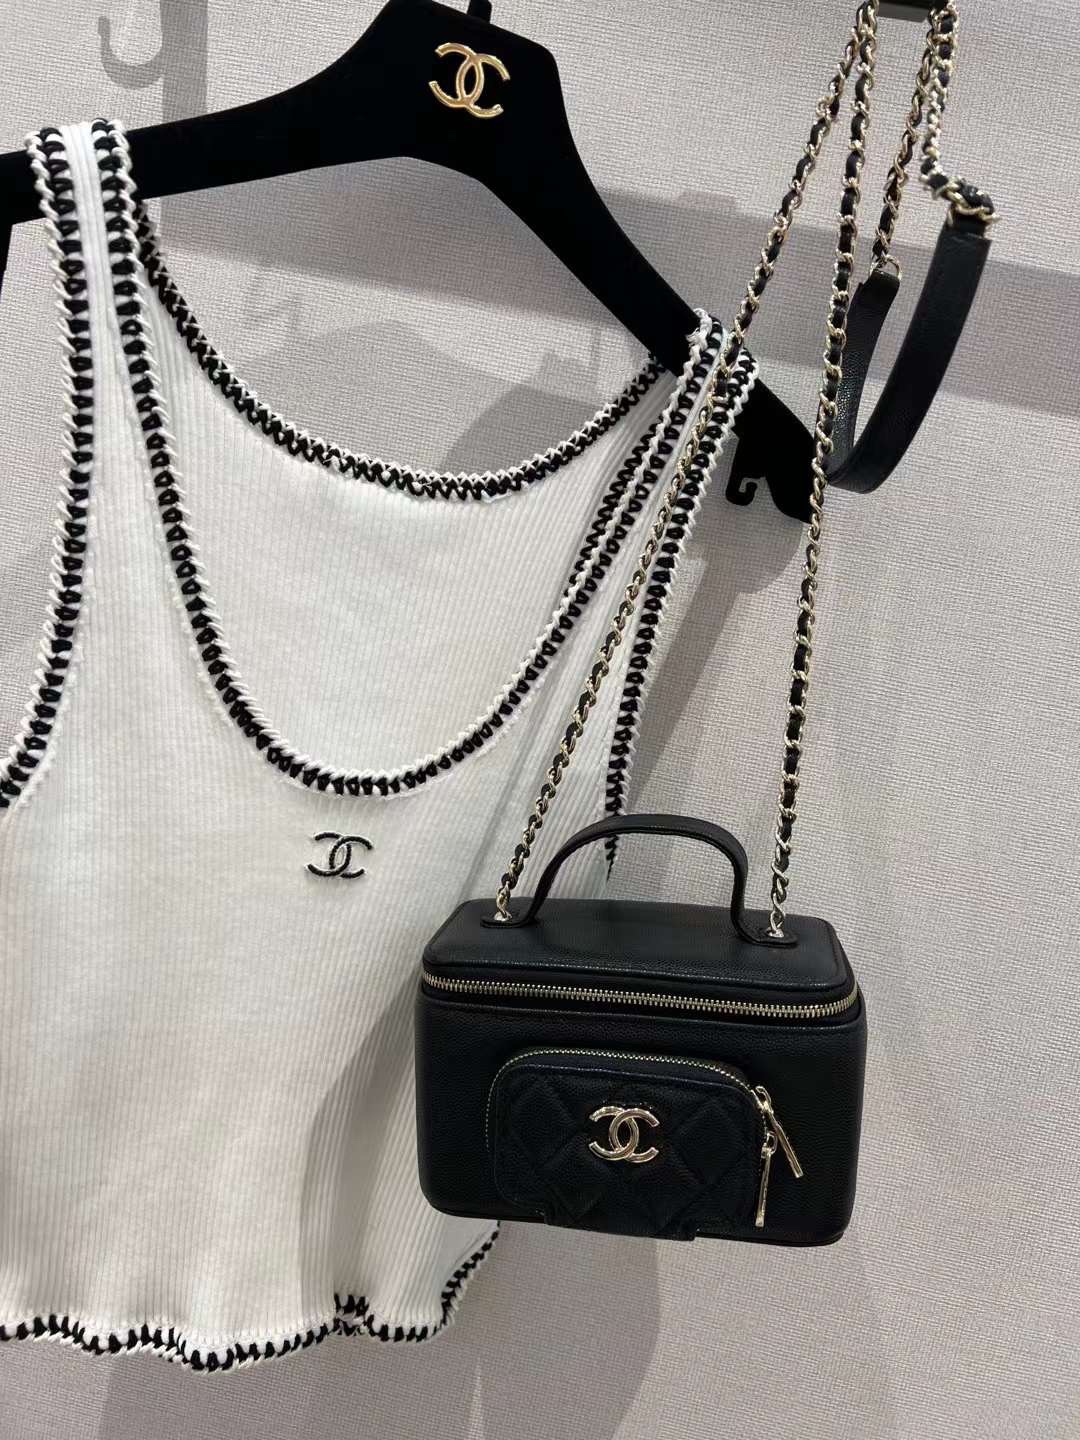 【P1280】Chanel包包批发 香奈儿小口袋方形盒子包手提斜挎化妆包 黑色